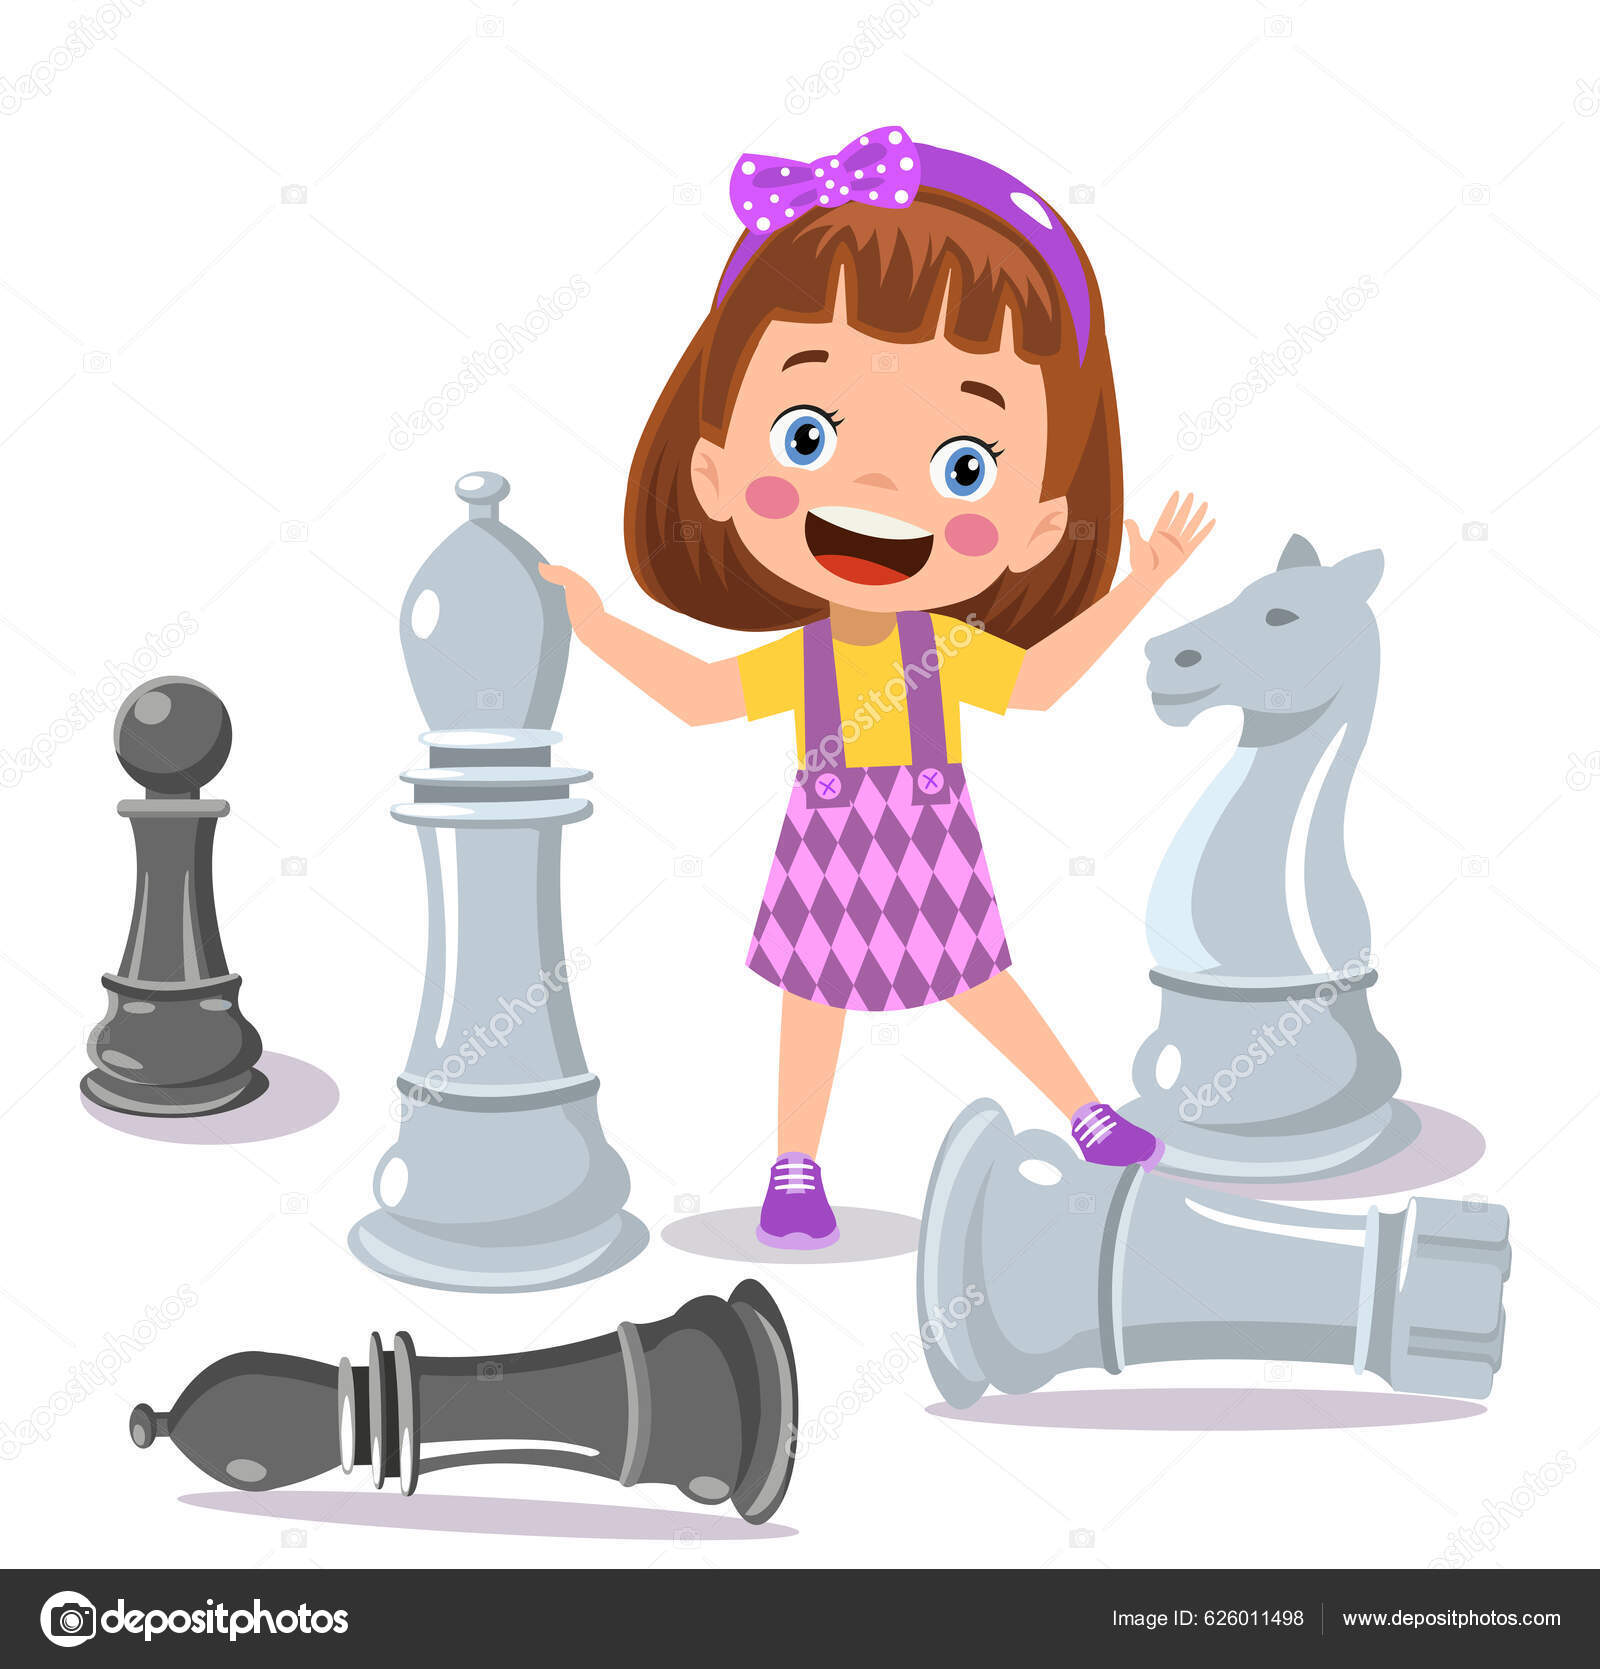 Cavalo de xadrez livre de direitos Vetores Clip Art ilustração  -vc041490-CoolCLIPS.com